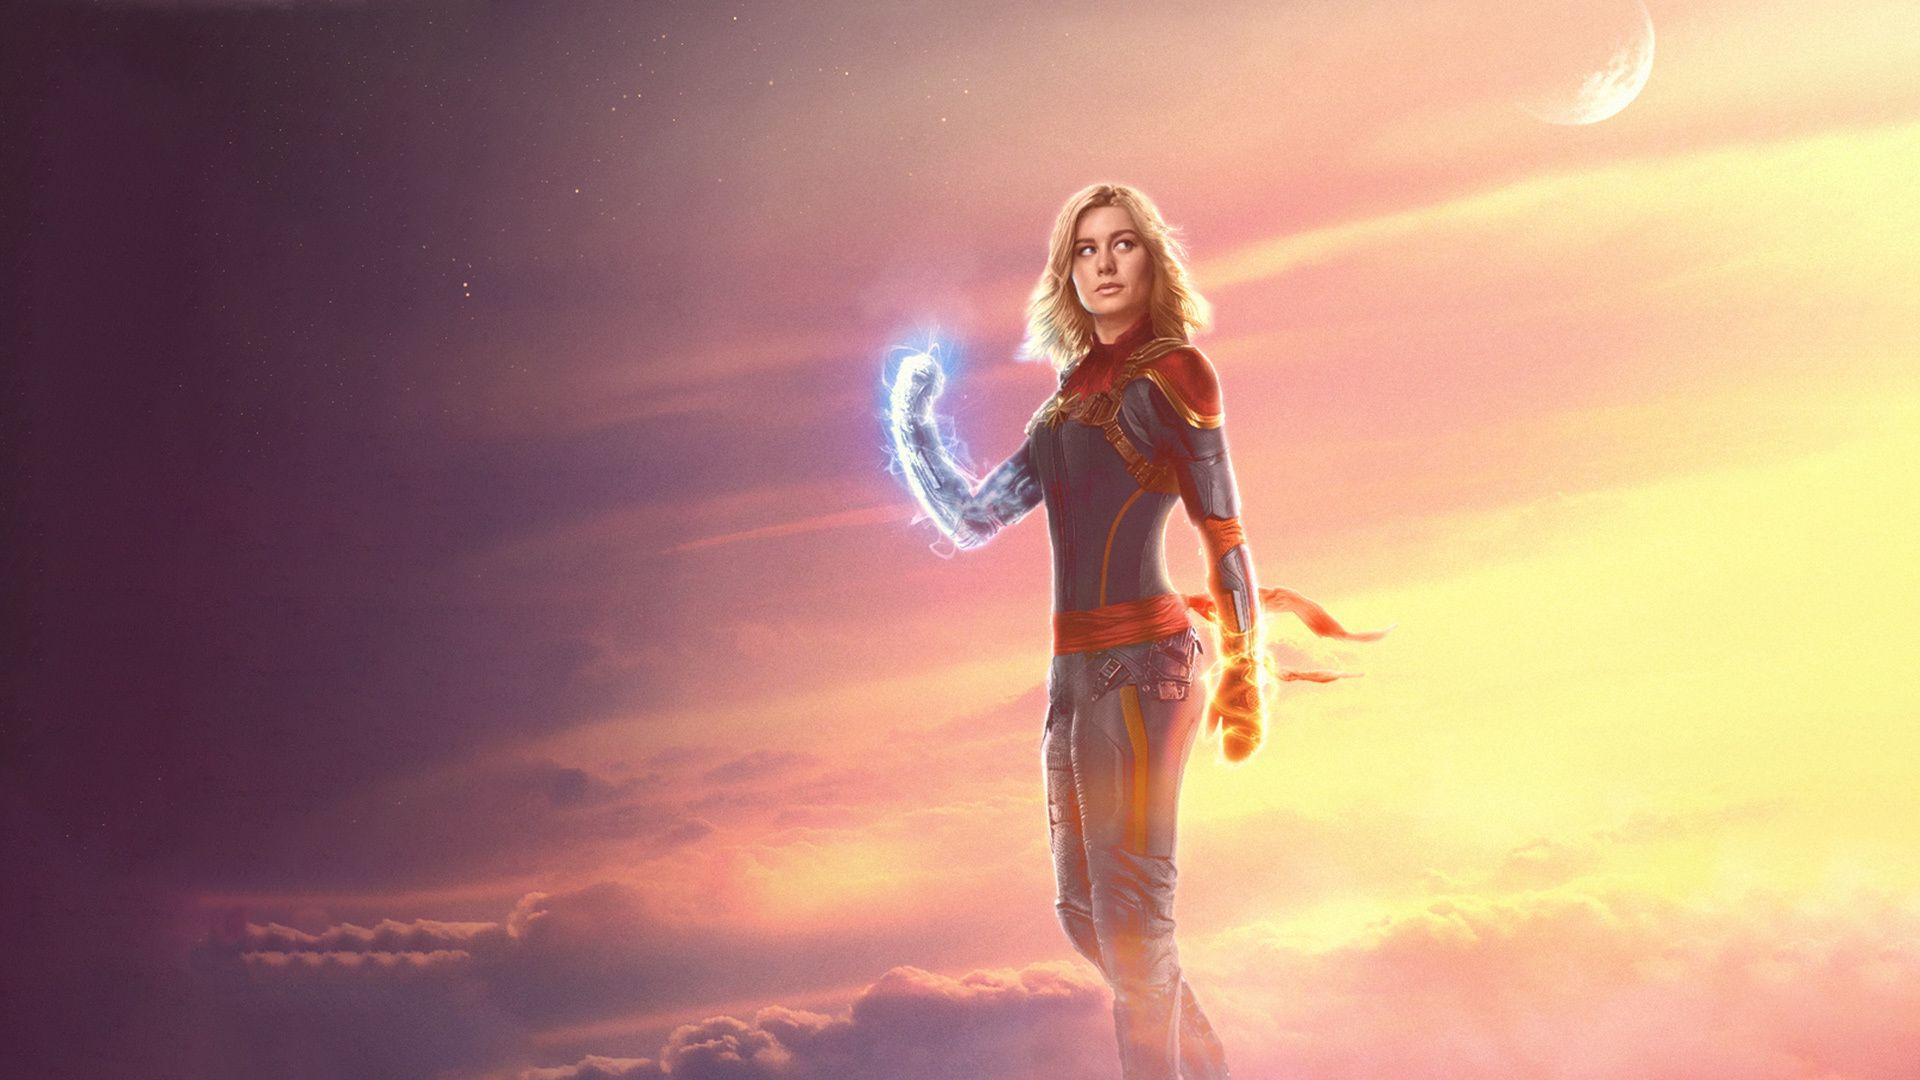 Brie Larson as Captain Marvel Wallpaper